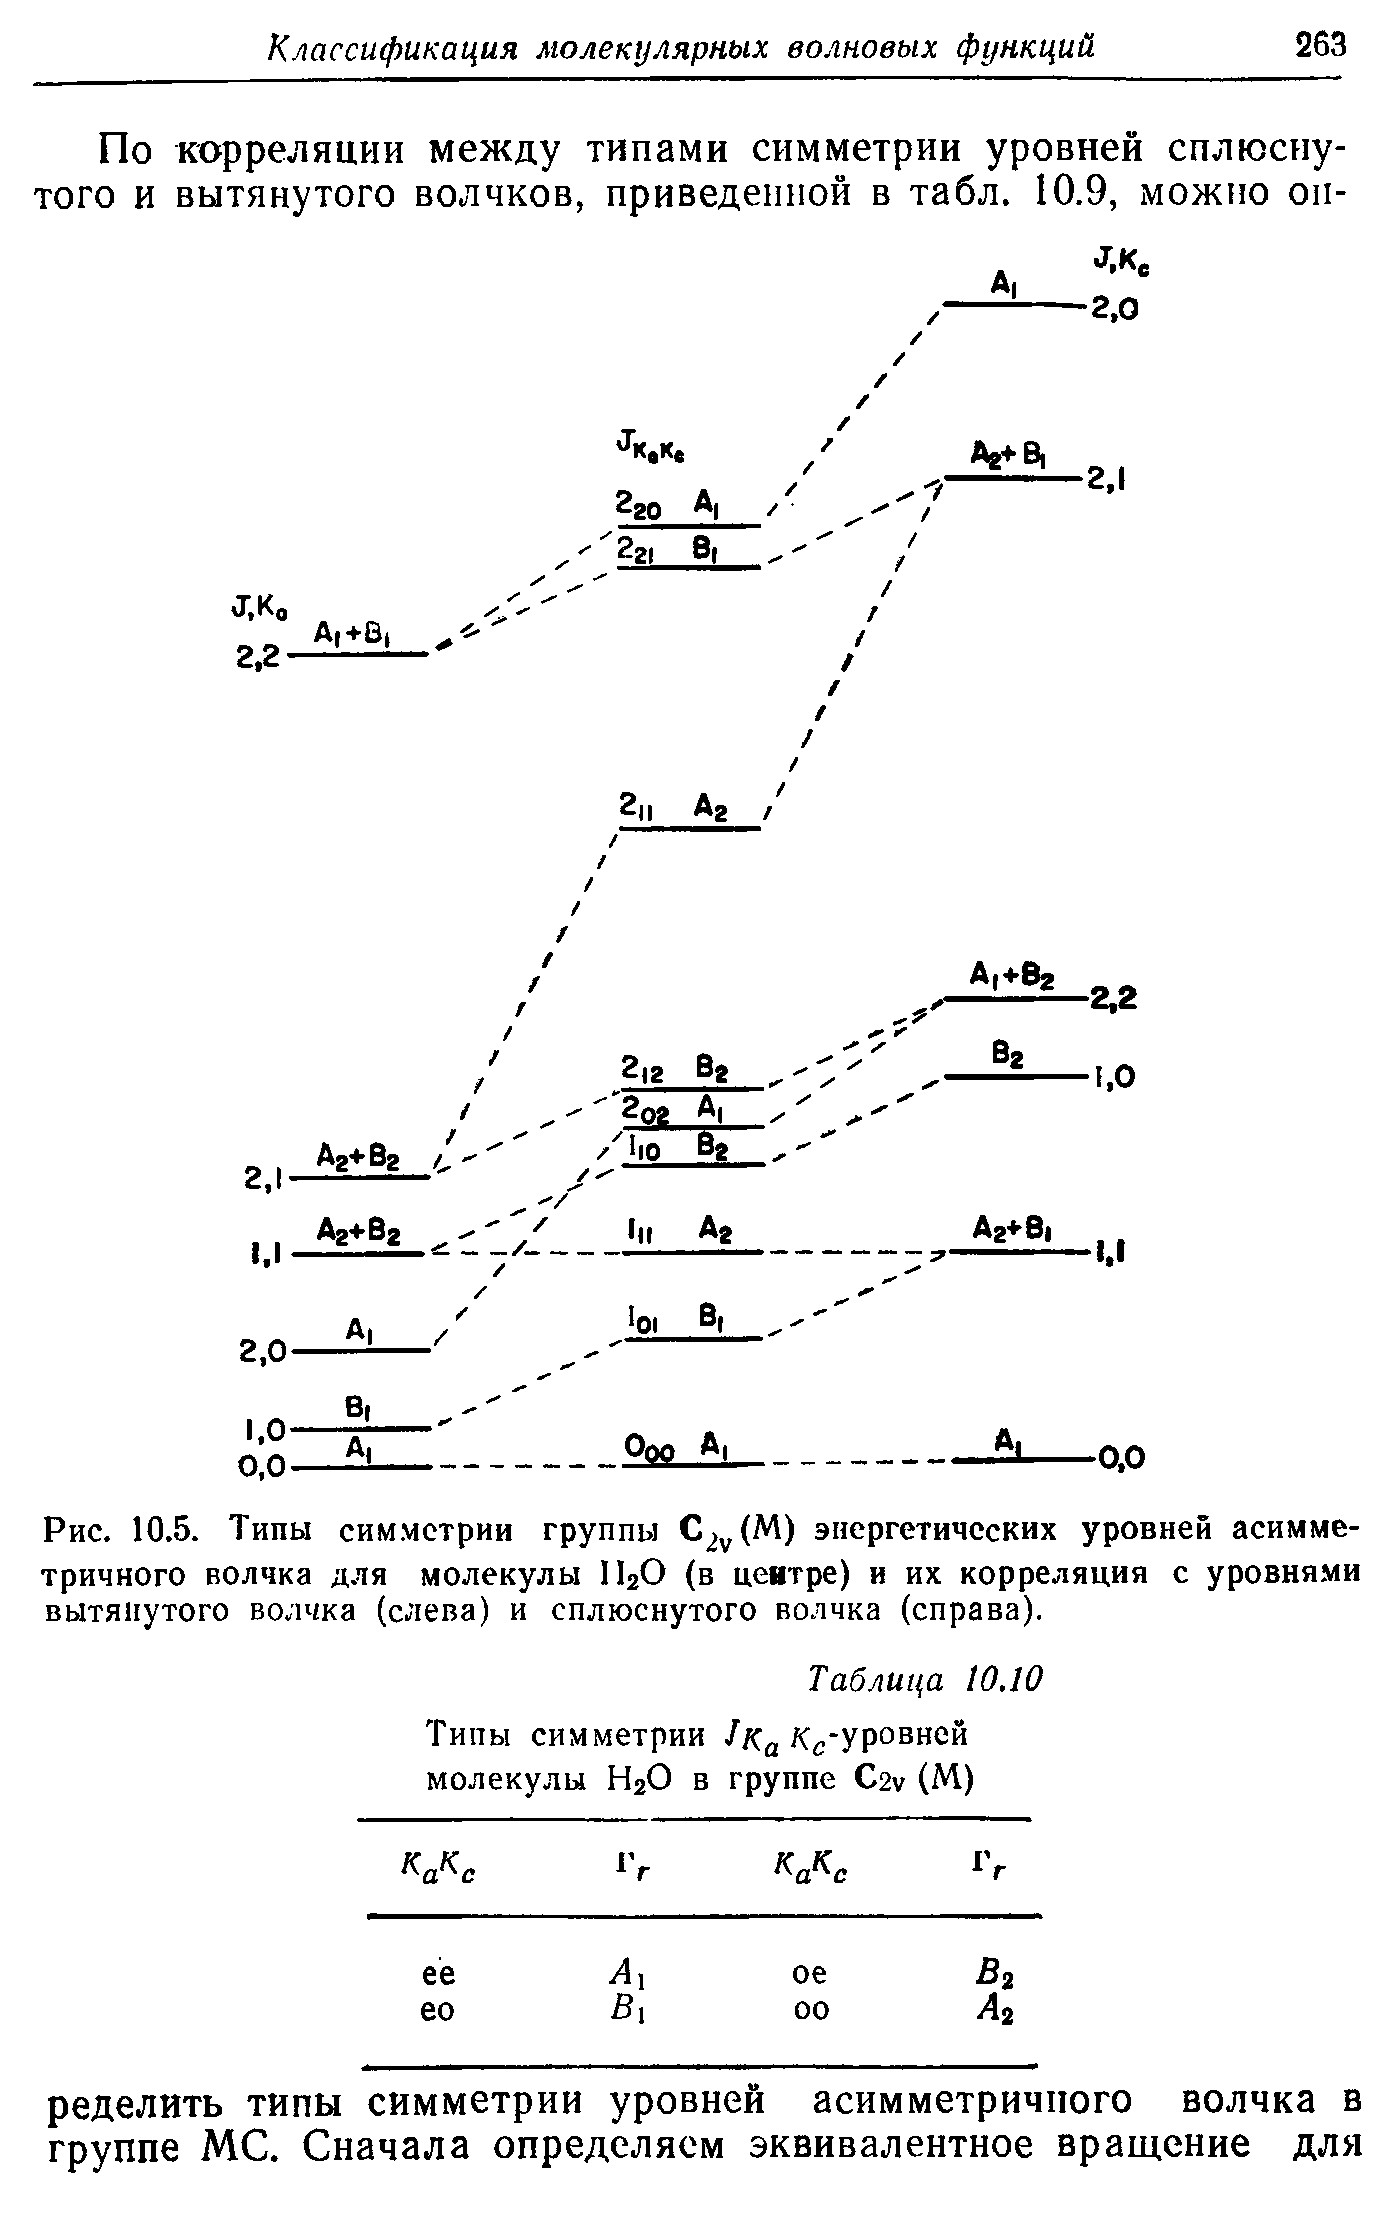 Рис. 10.5. <a href="/info/324653">Типы симметрии</a> группы С2 (М) энергетических уровней асимметричного волчка Д.ЧЯ молекулы lIjO (в цеятре) и их корреляция с уровня.ми вытянутого волчка (слева) и сплюснутого волчка (справа).
